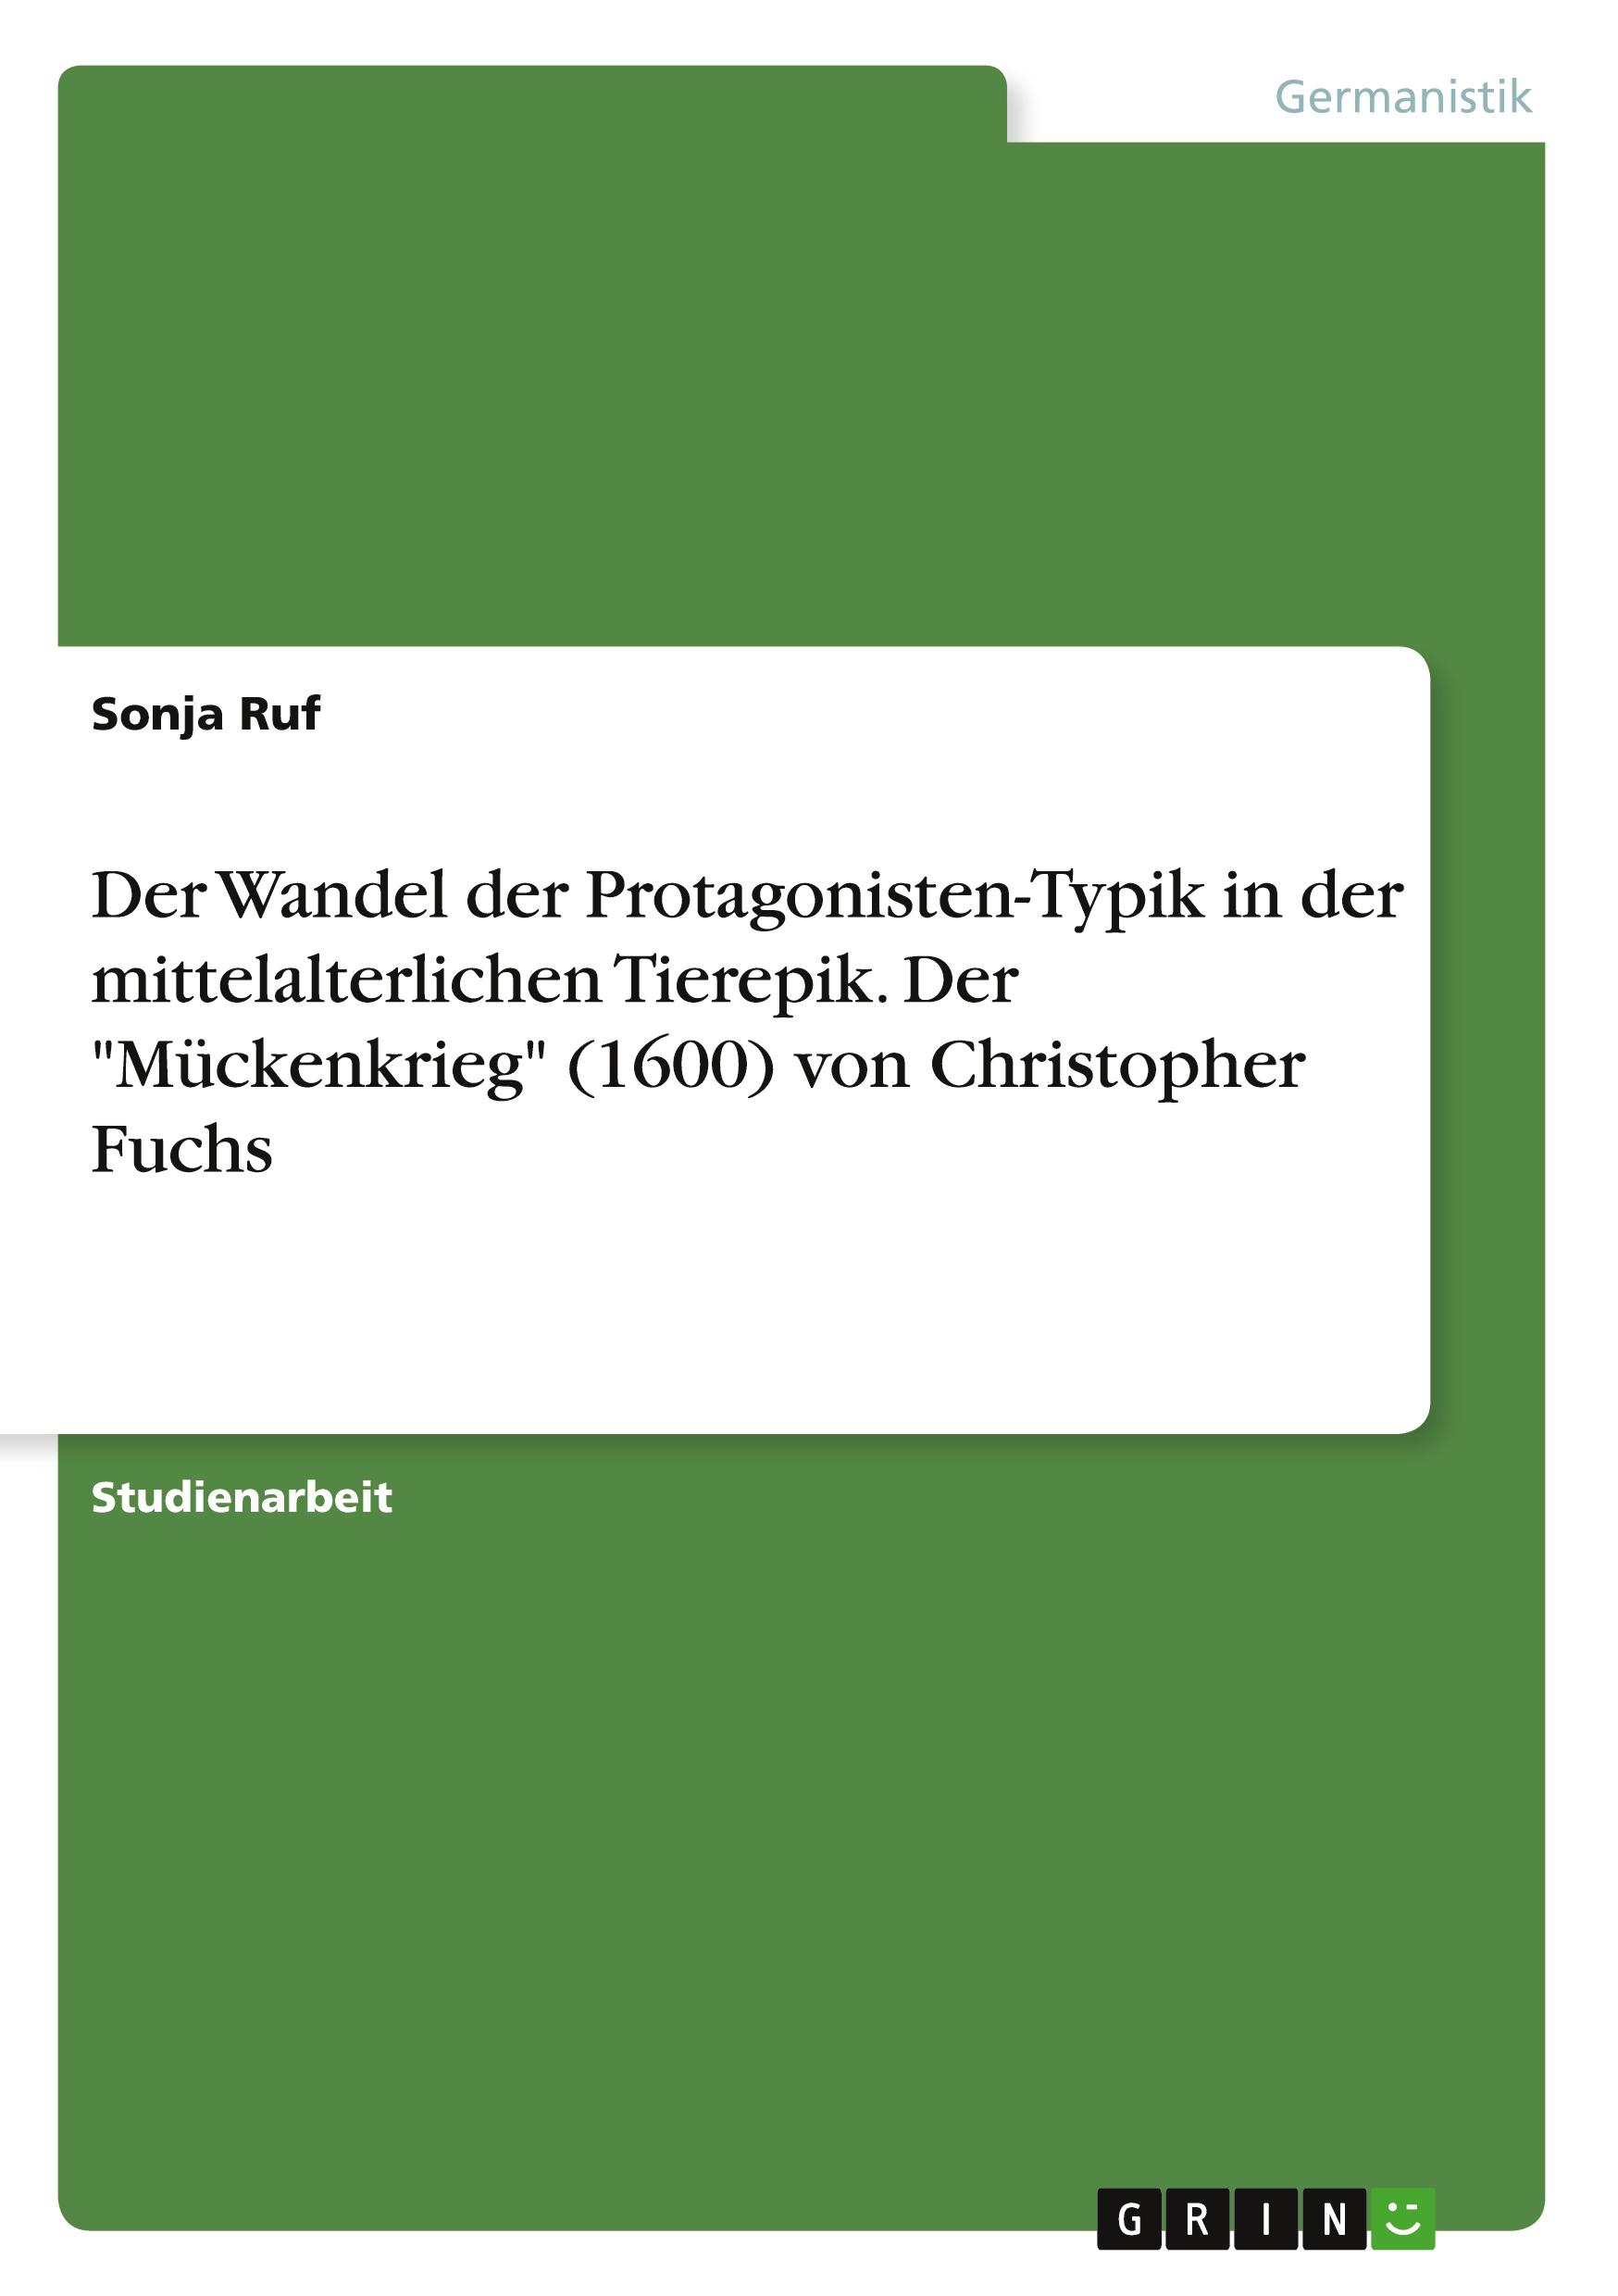 Der Wandel der Protagonisten-Typik in der mittelalterlichen Tierepik. Der "Mückenkrieg" (1600) von Christopher Fuchs